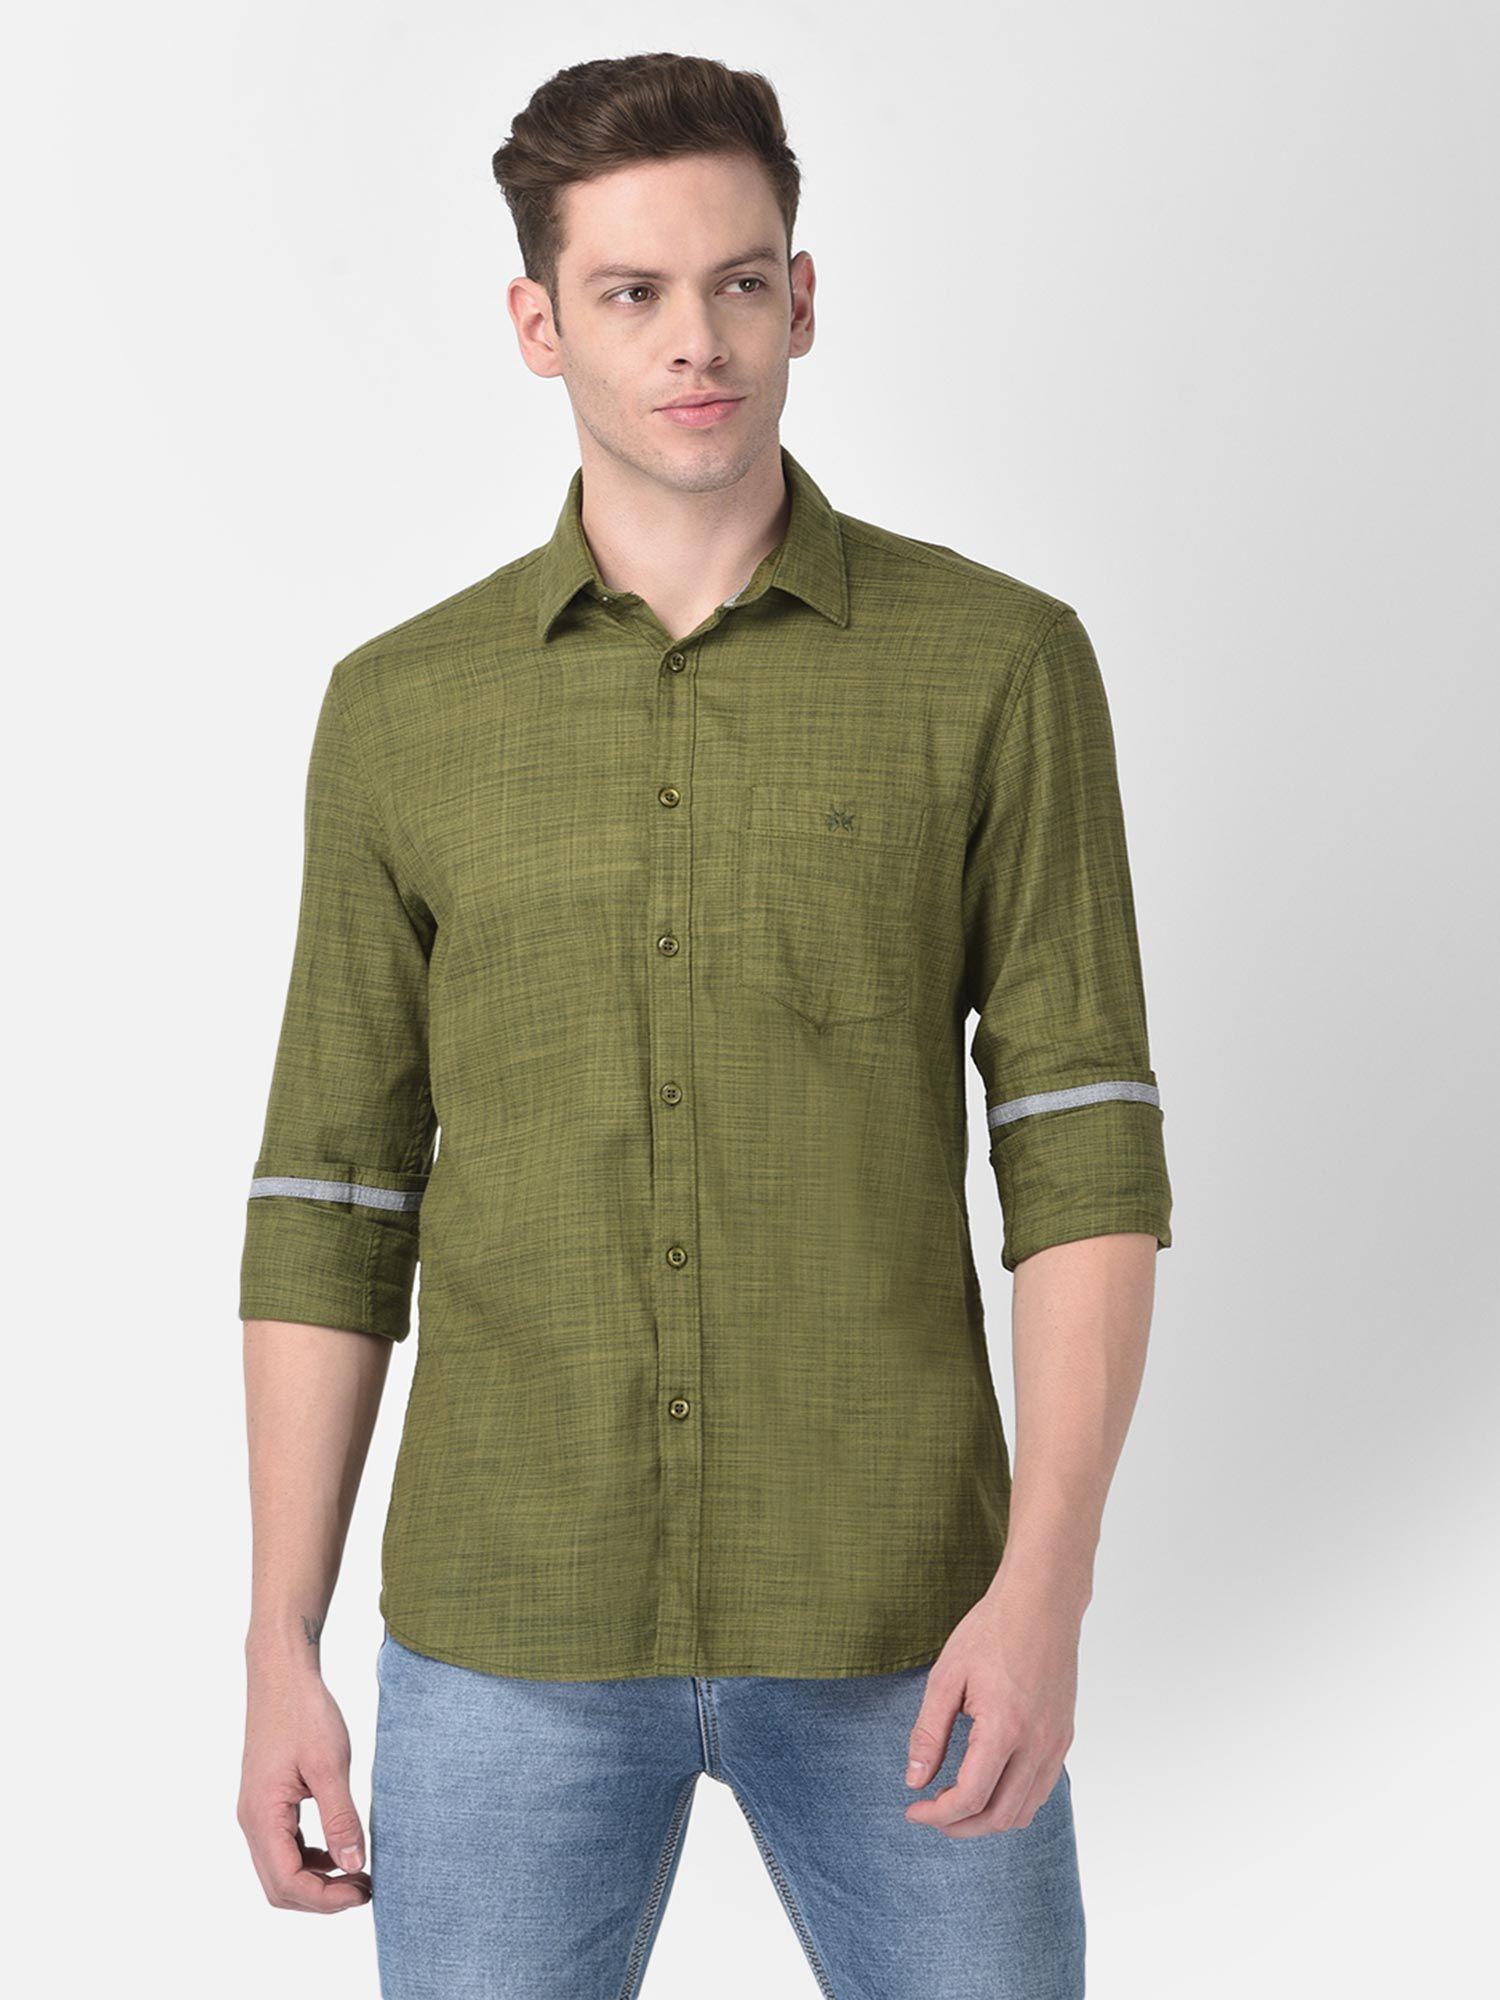 men olive green solid shirt